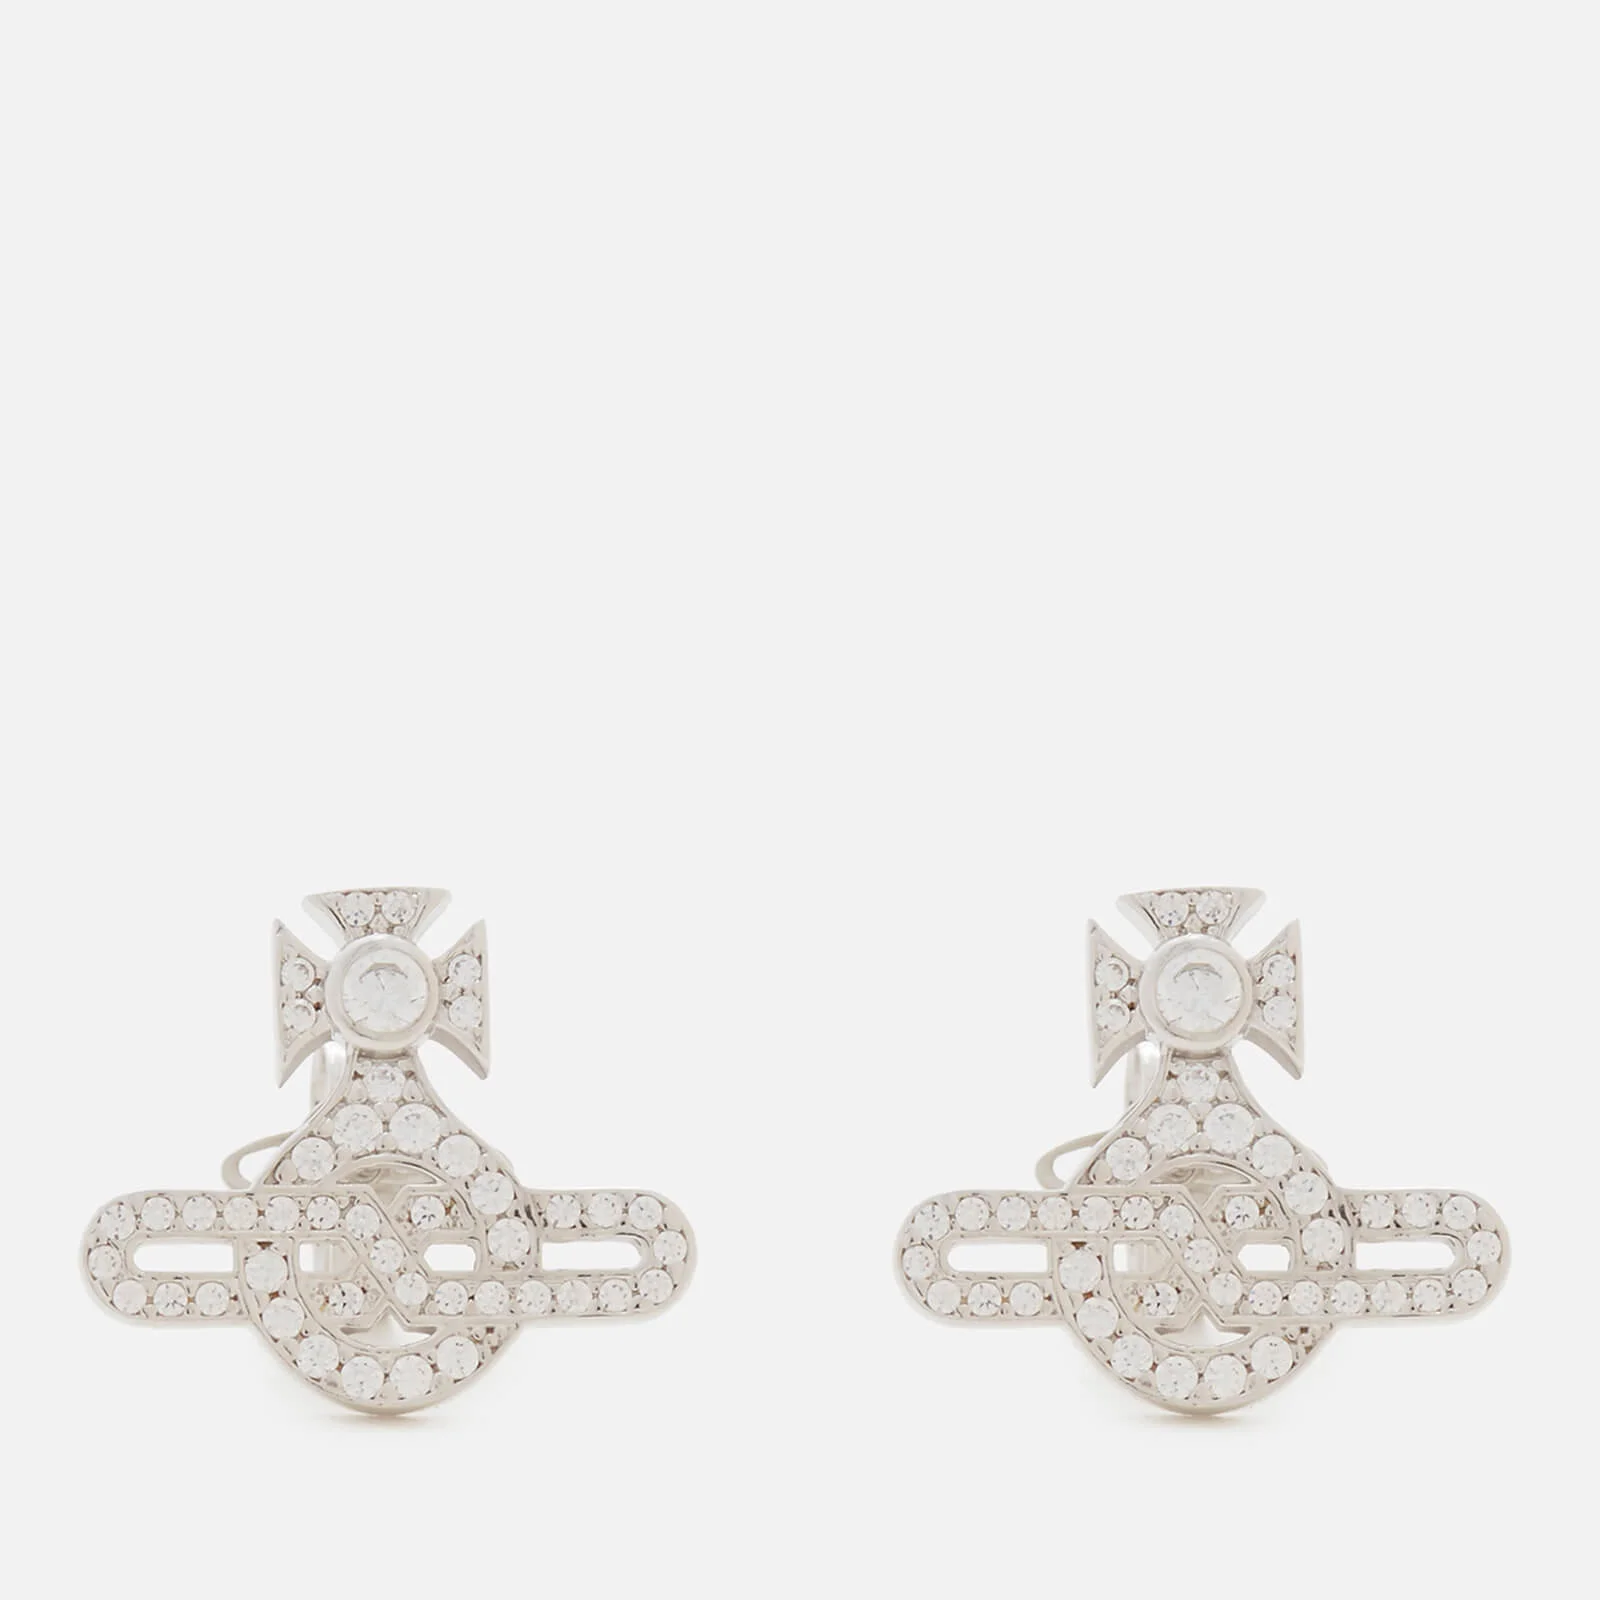 Vivienne Westwood Women's Infinity Orb Stud Earrings - White Cubic Zirconia Image 1